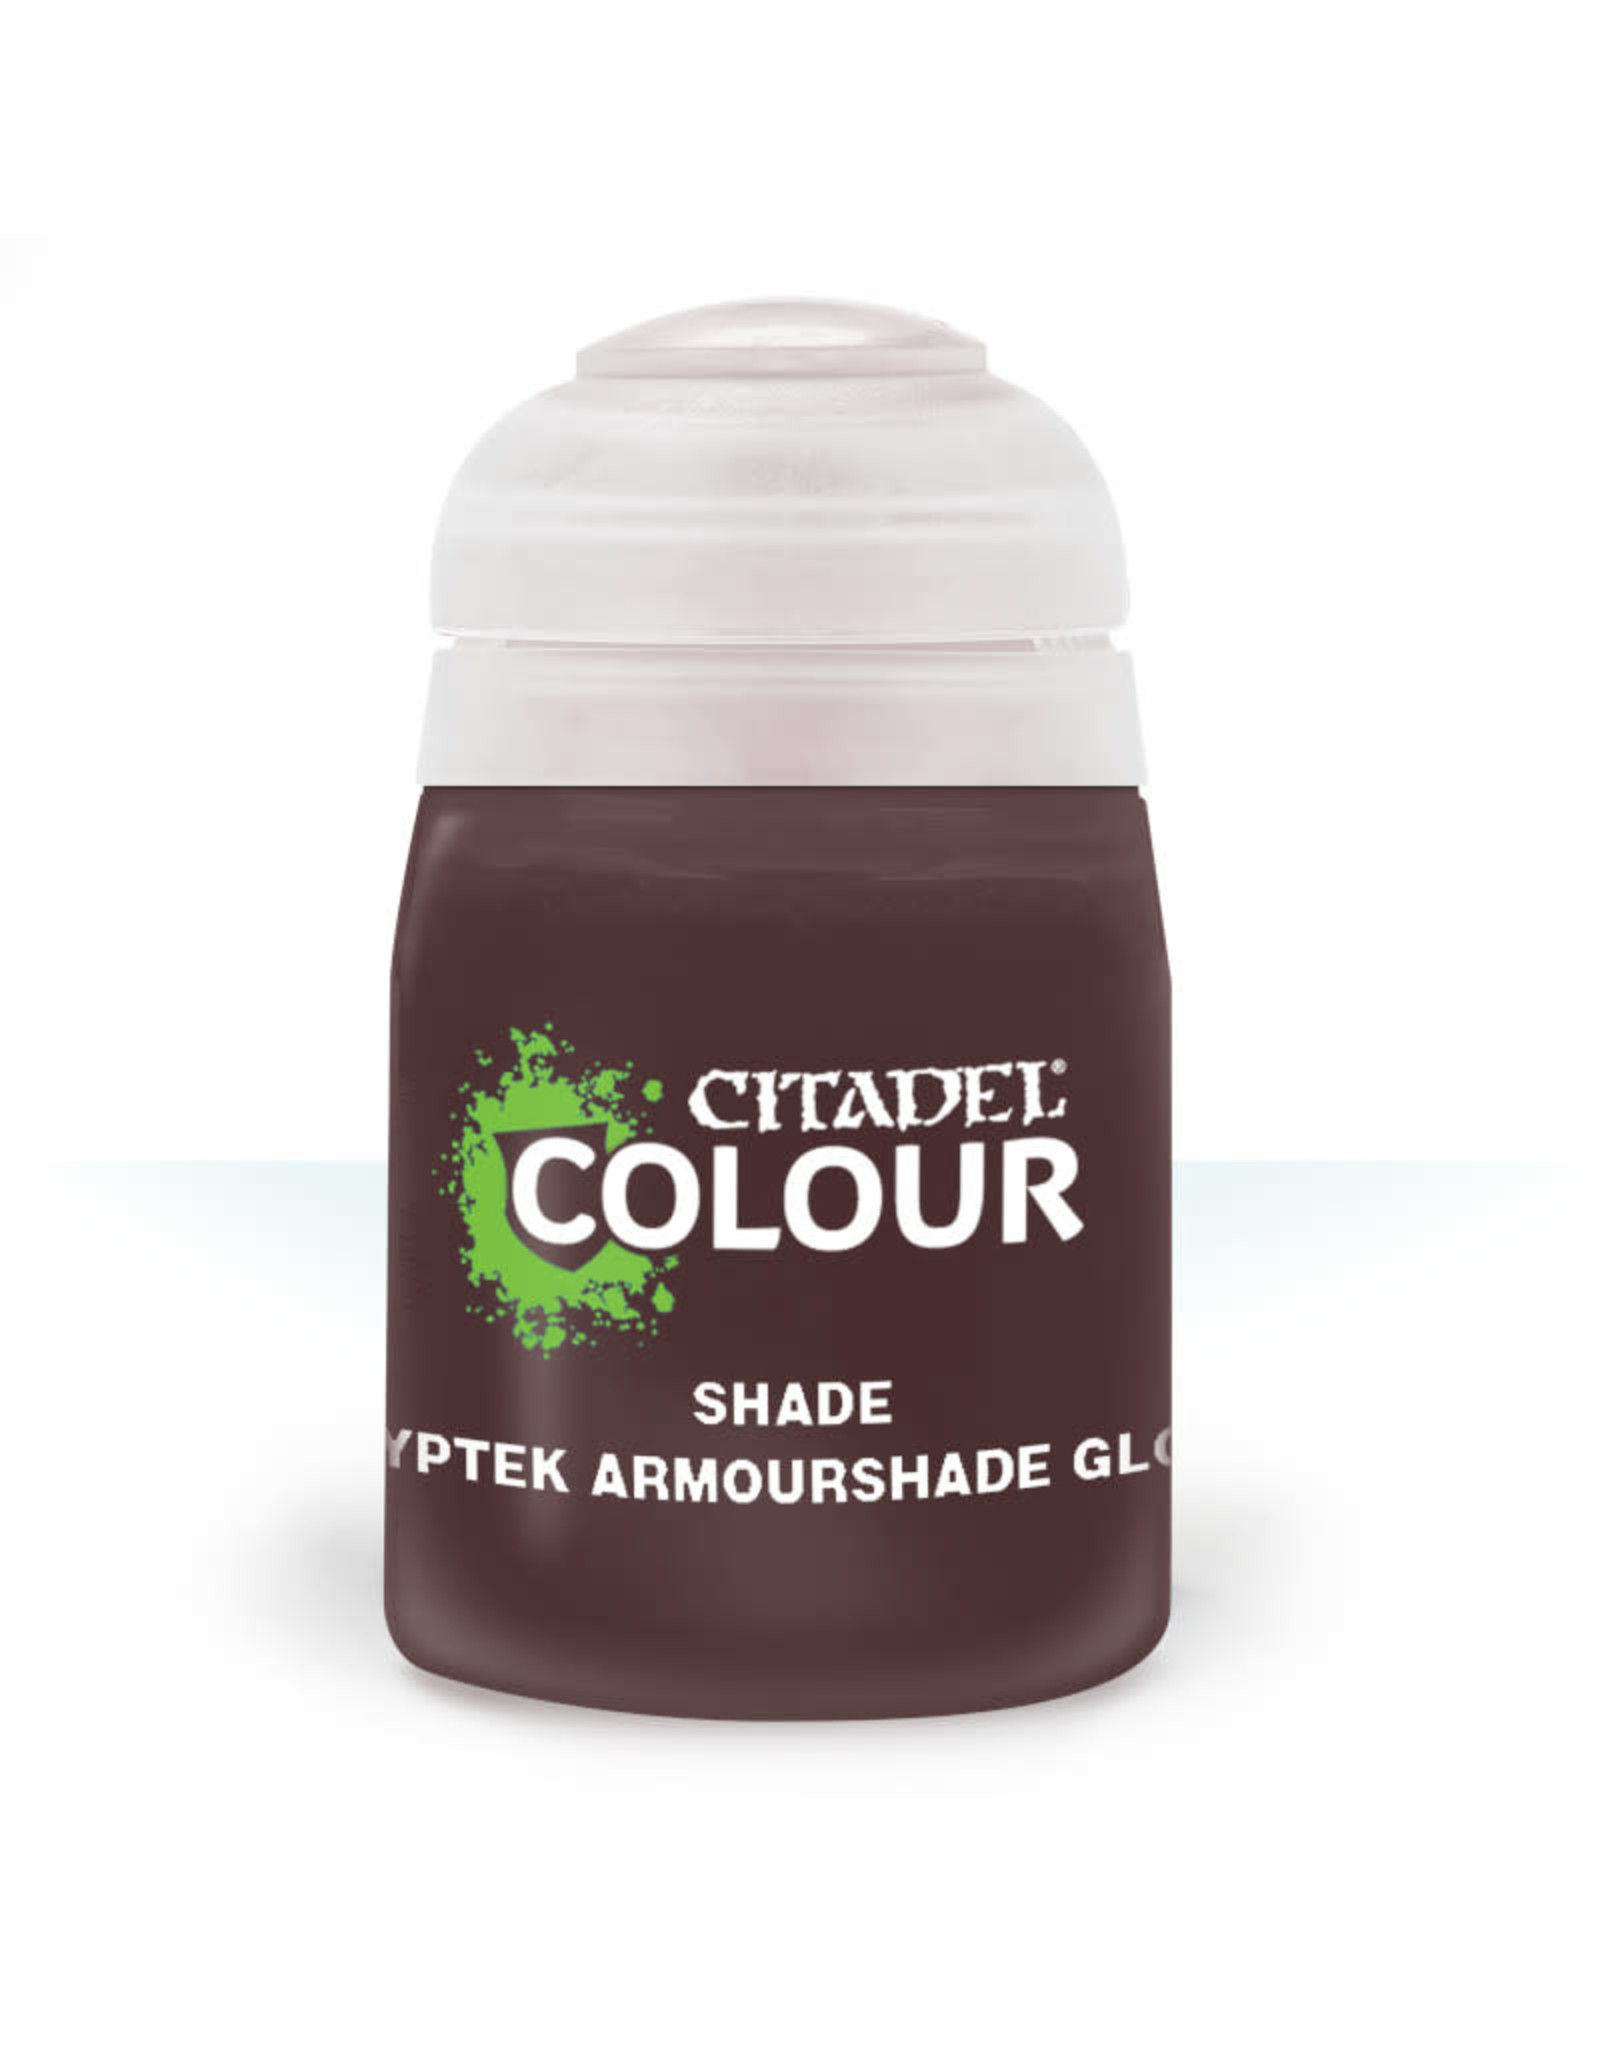 Citadel Shade Paint: Cryptek Armourshade Gloss